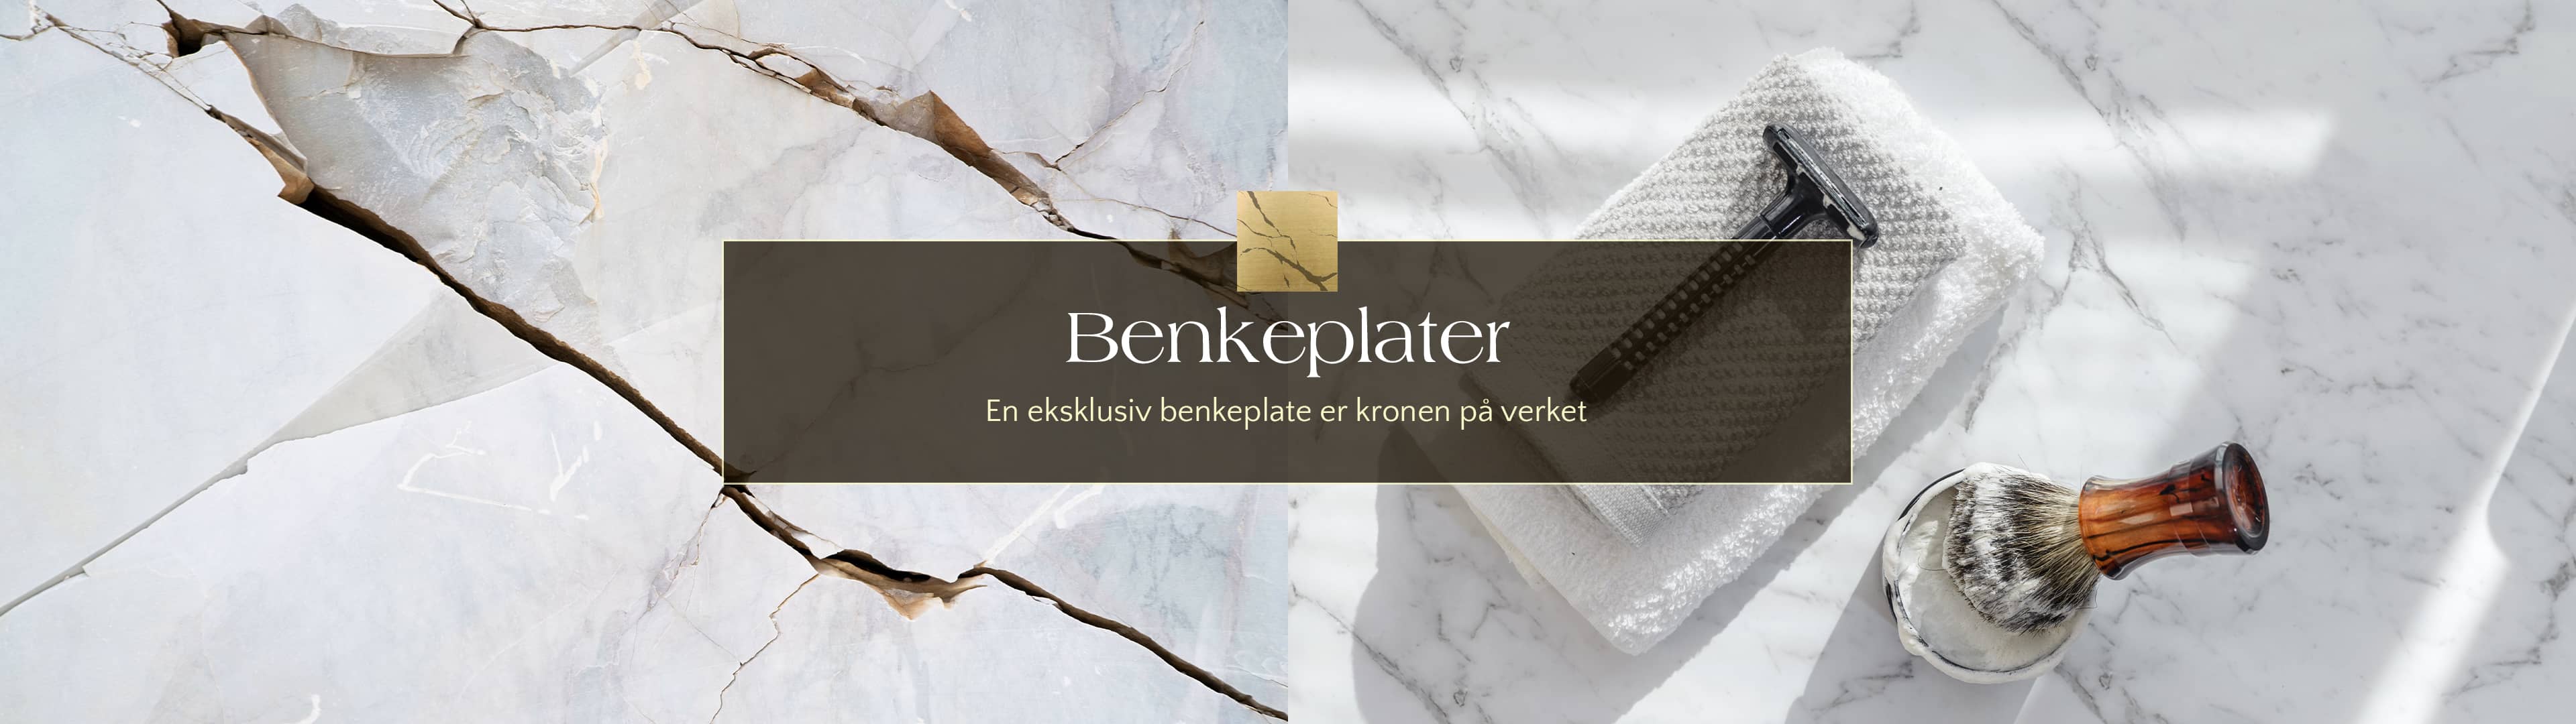 Brandt Bad Benkeplater Banner med rå marmor blokk og klassisk barberhøvel med barberkost i tre på benkeplate i carrara marmor.